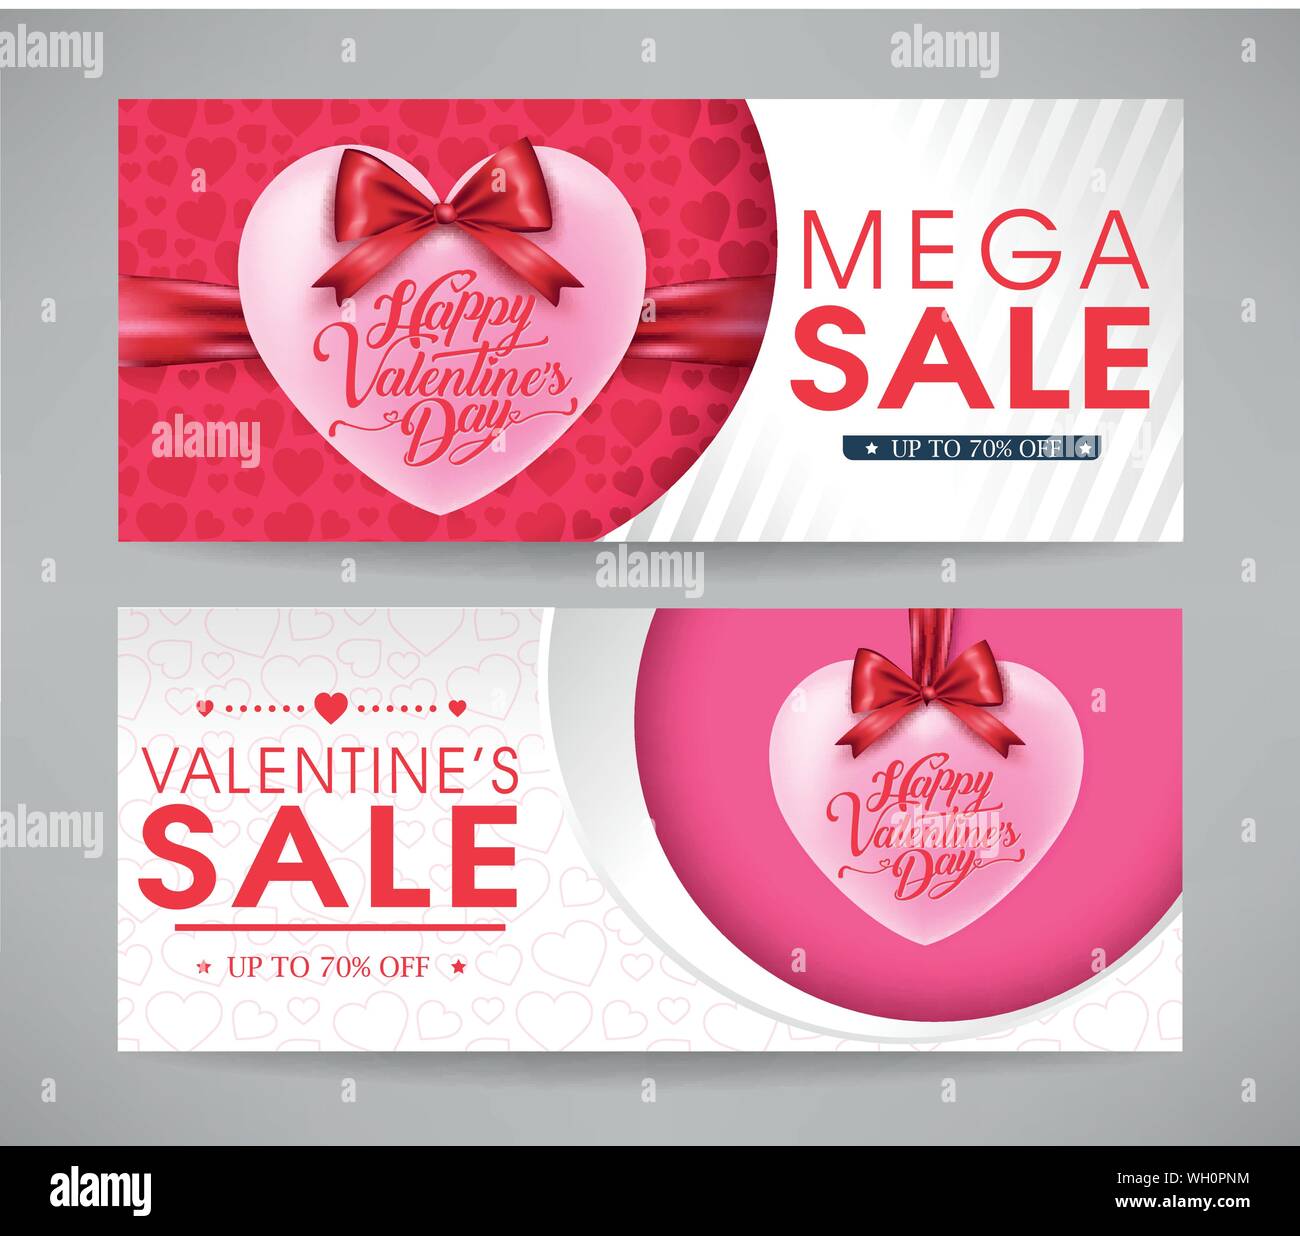 Valentines Day Mega Bannières Vente Set avec des coeurs et des rubans pour des fins promotionnelles. Vector Illustration. Illustration de Vecteur